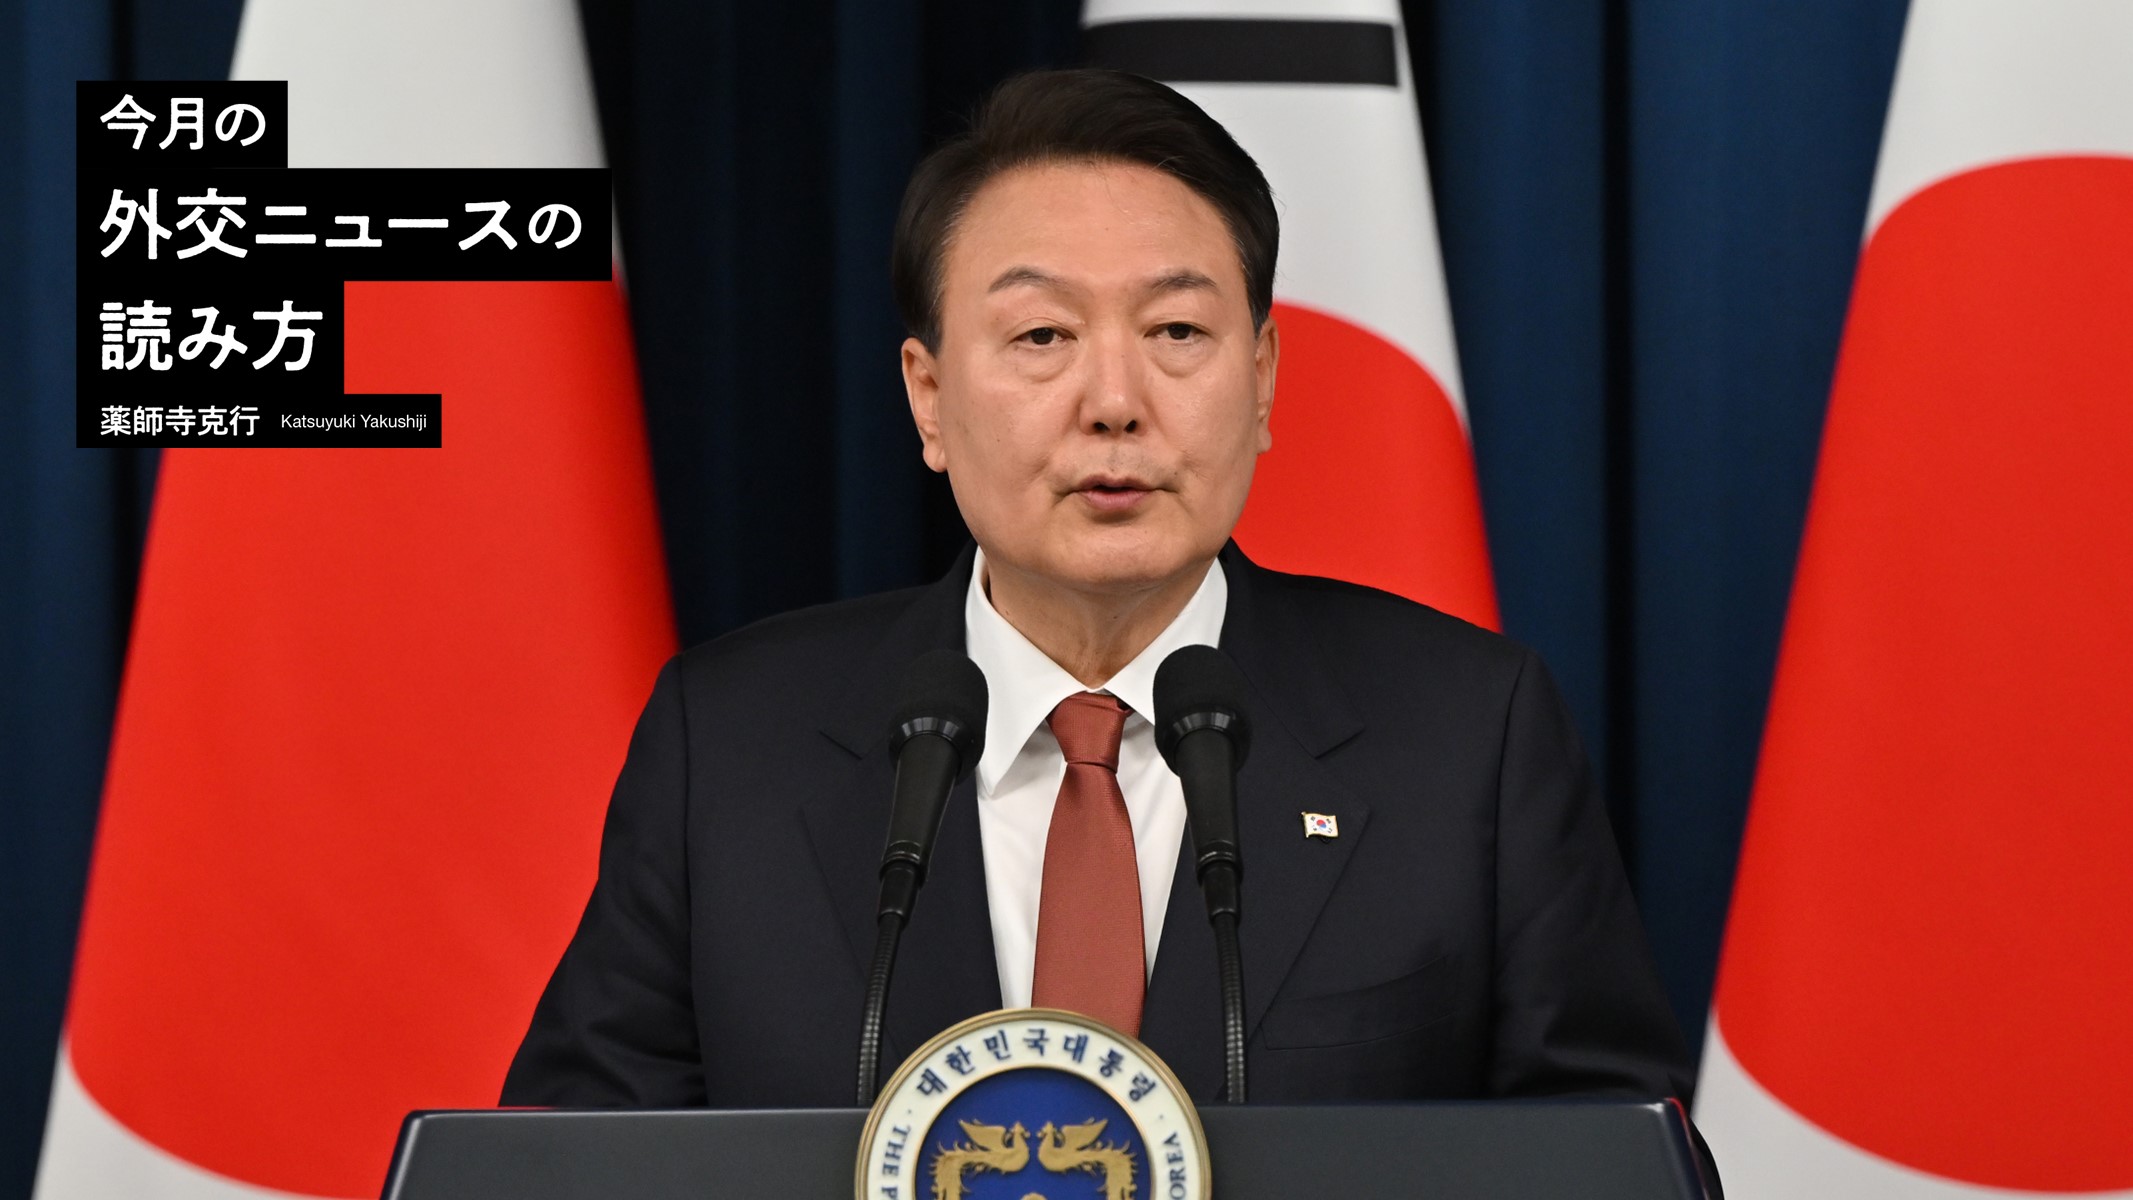 韓国・尹錫悦大統領が「韓米同盟」に舵を切った理由 | 薬師寺克行「今月の外交ニュースの読み方」